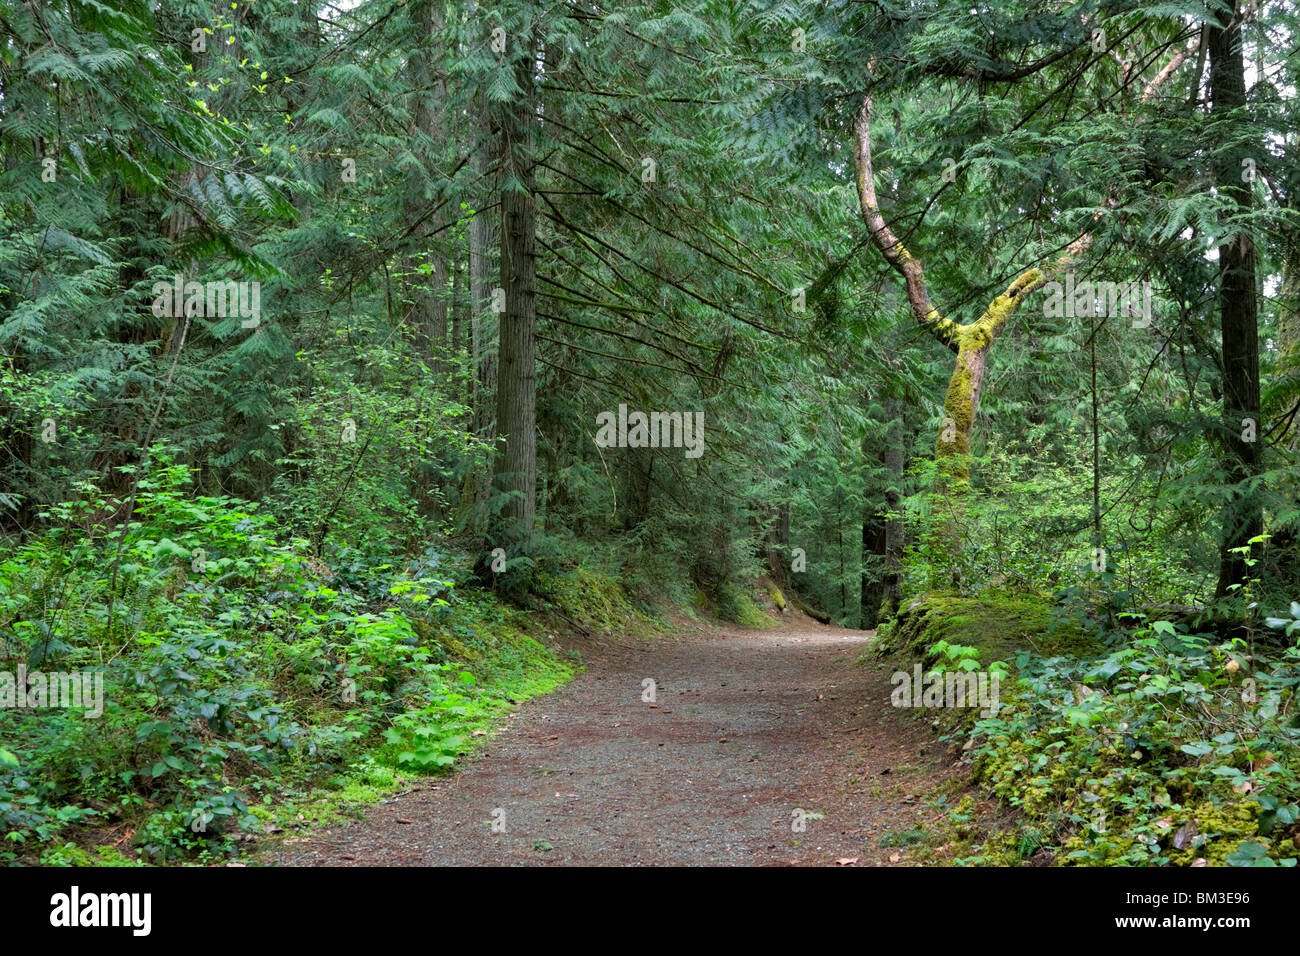 La via attraverso la foresta. Conifere e latifoglie un sottobosco sono tipici della foresta pluviale temperata del Nord Ovest del Pacifico Foto Stock